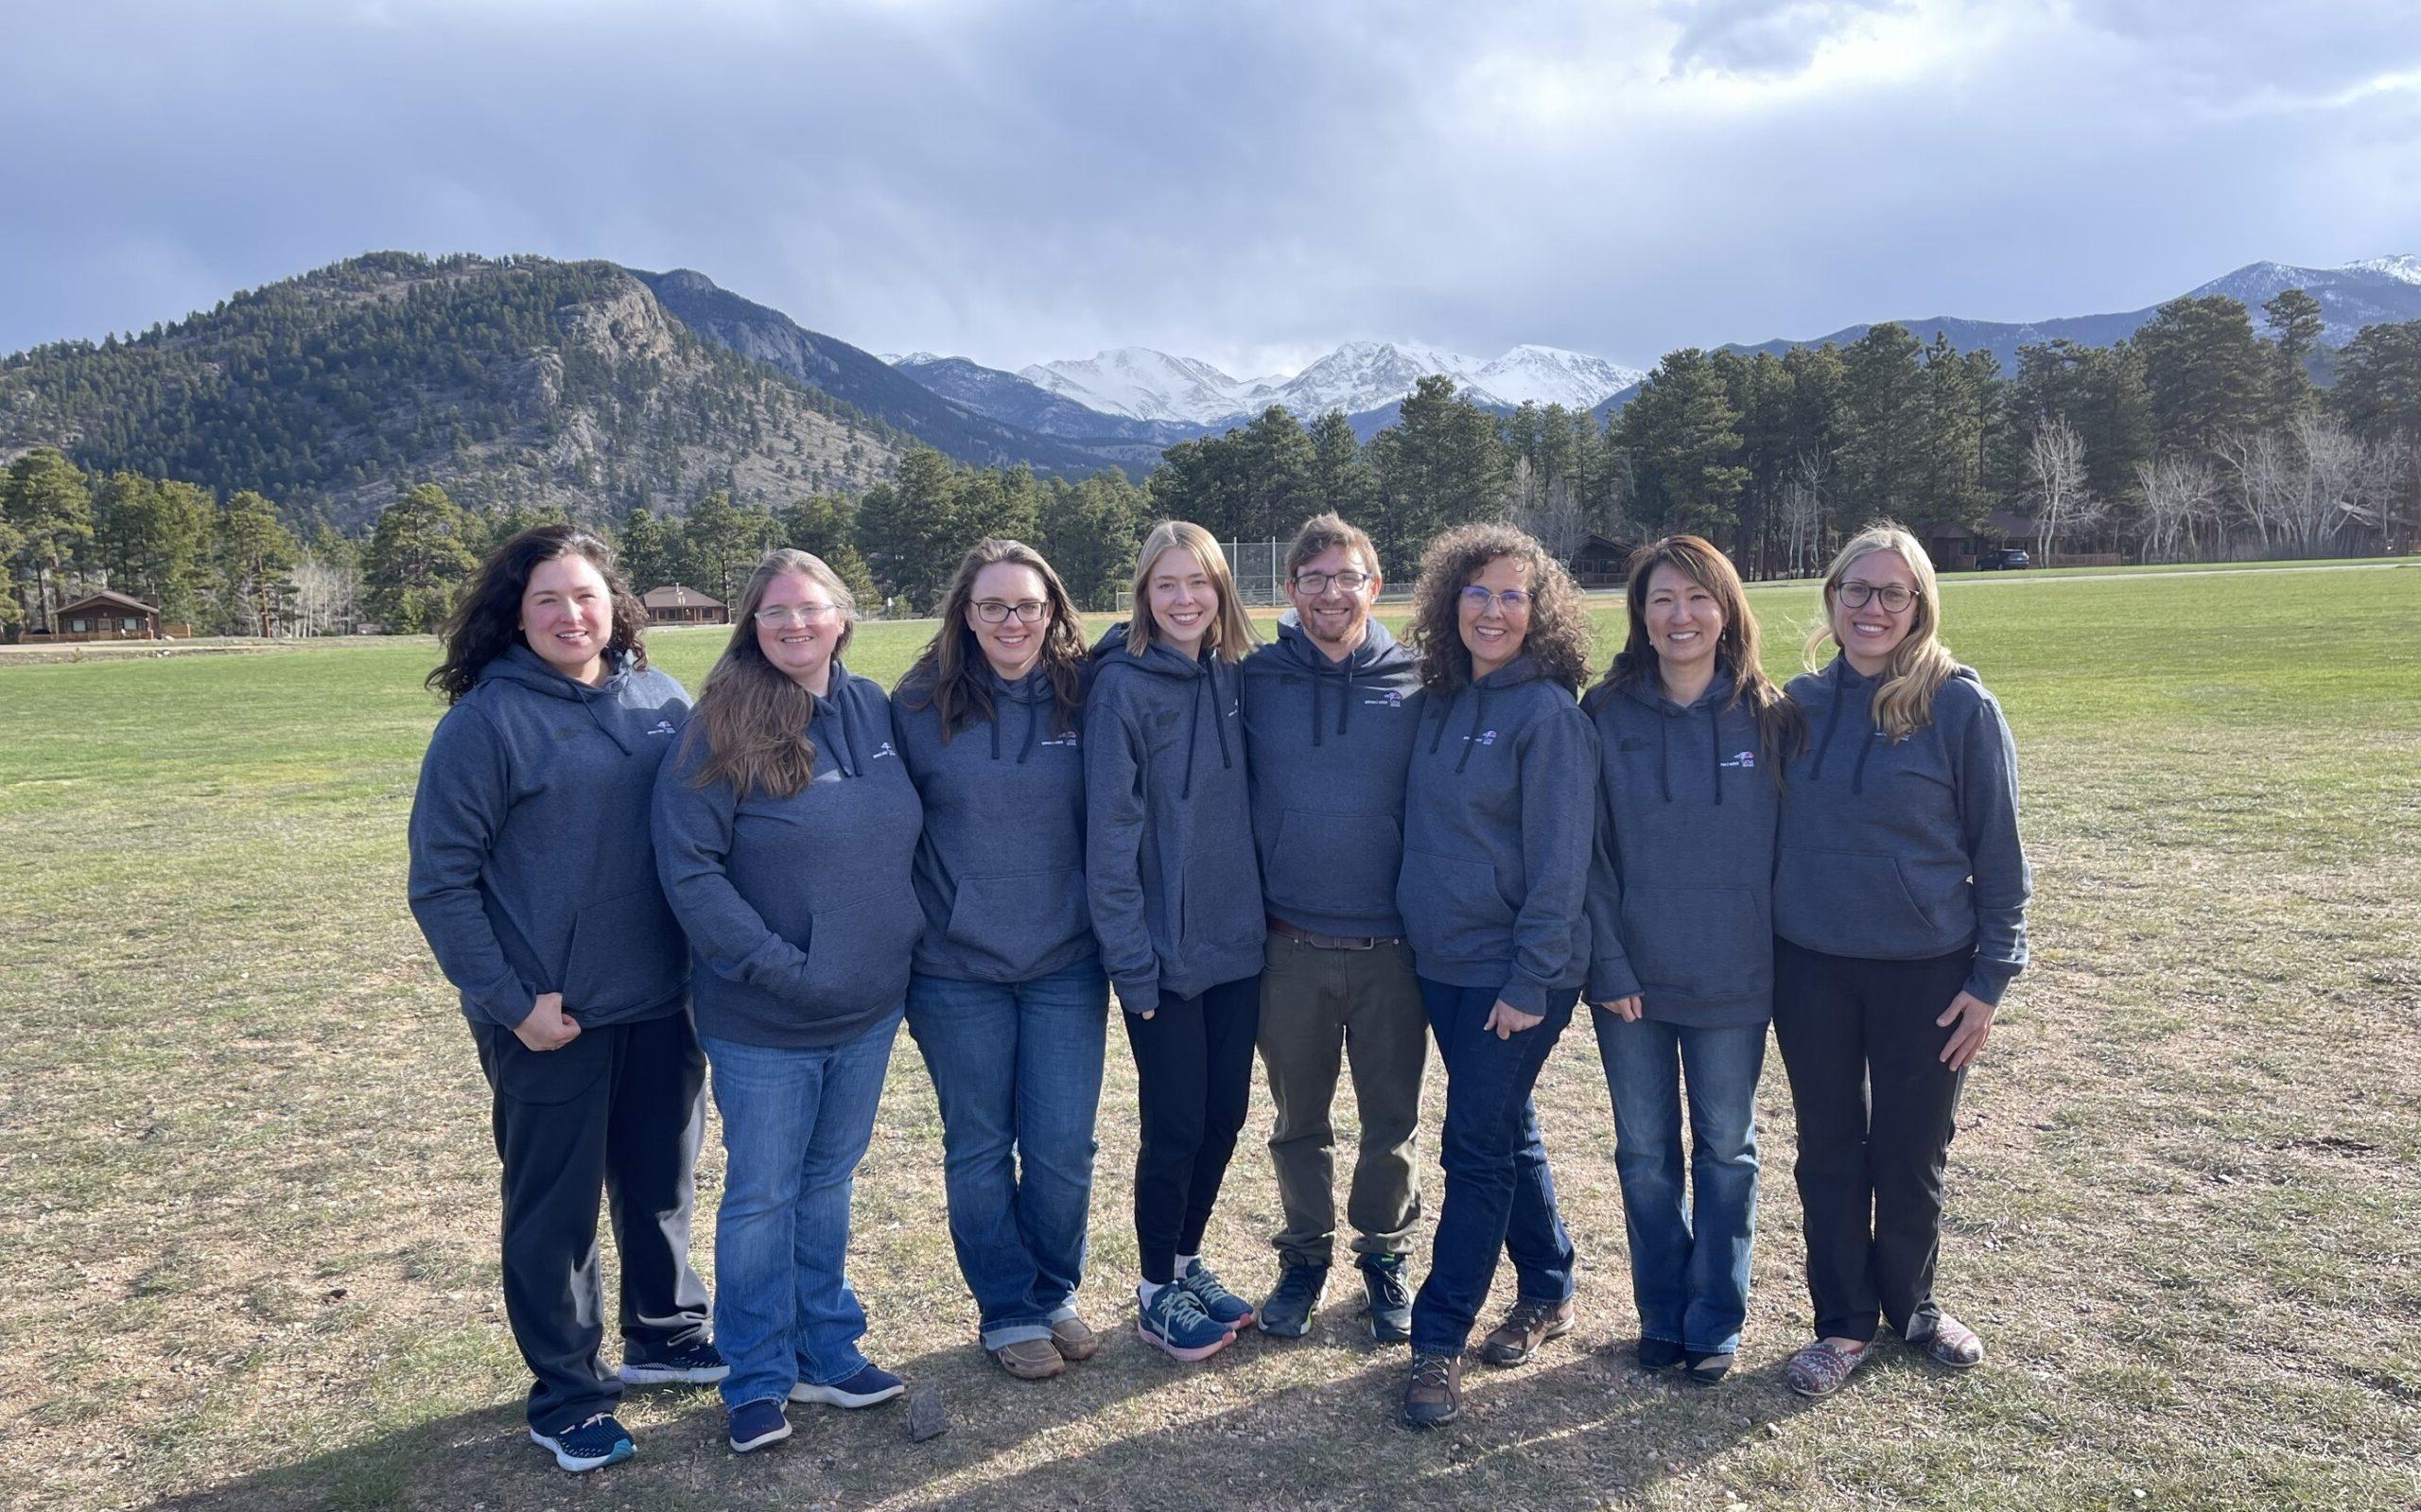 8名在线学习团队成员的照片，背景是落基山脉.